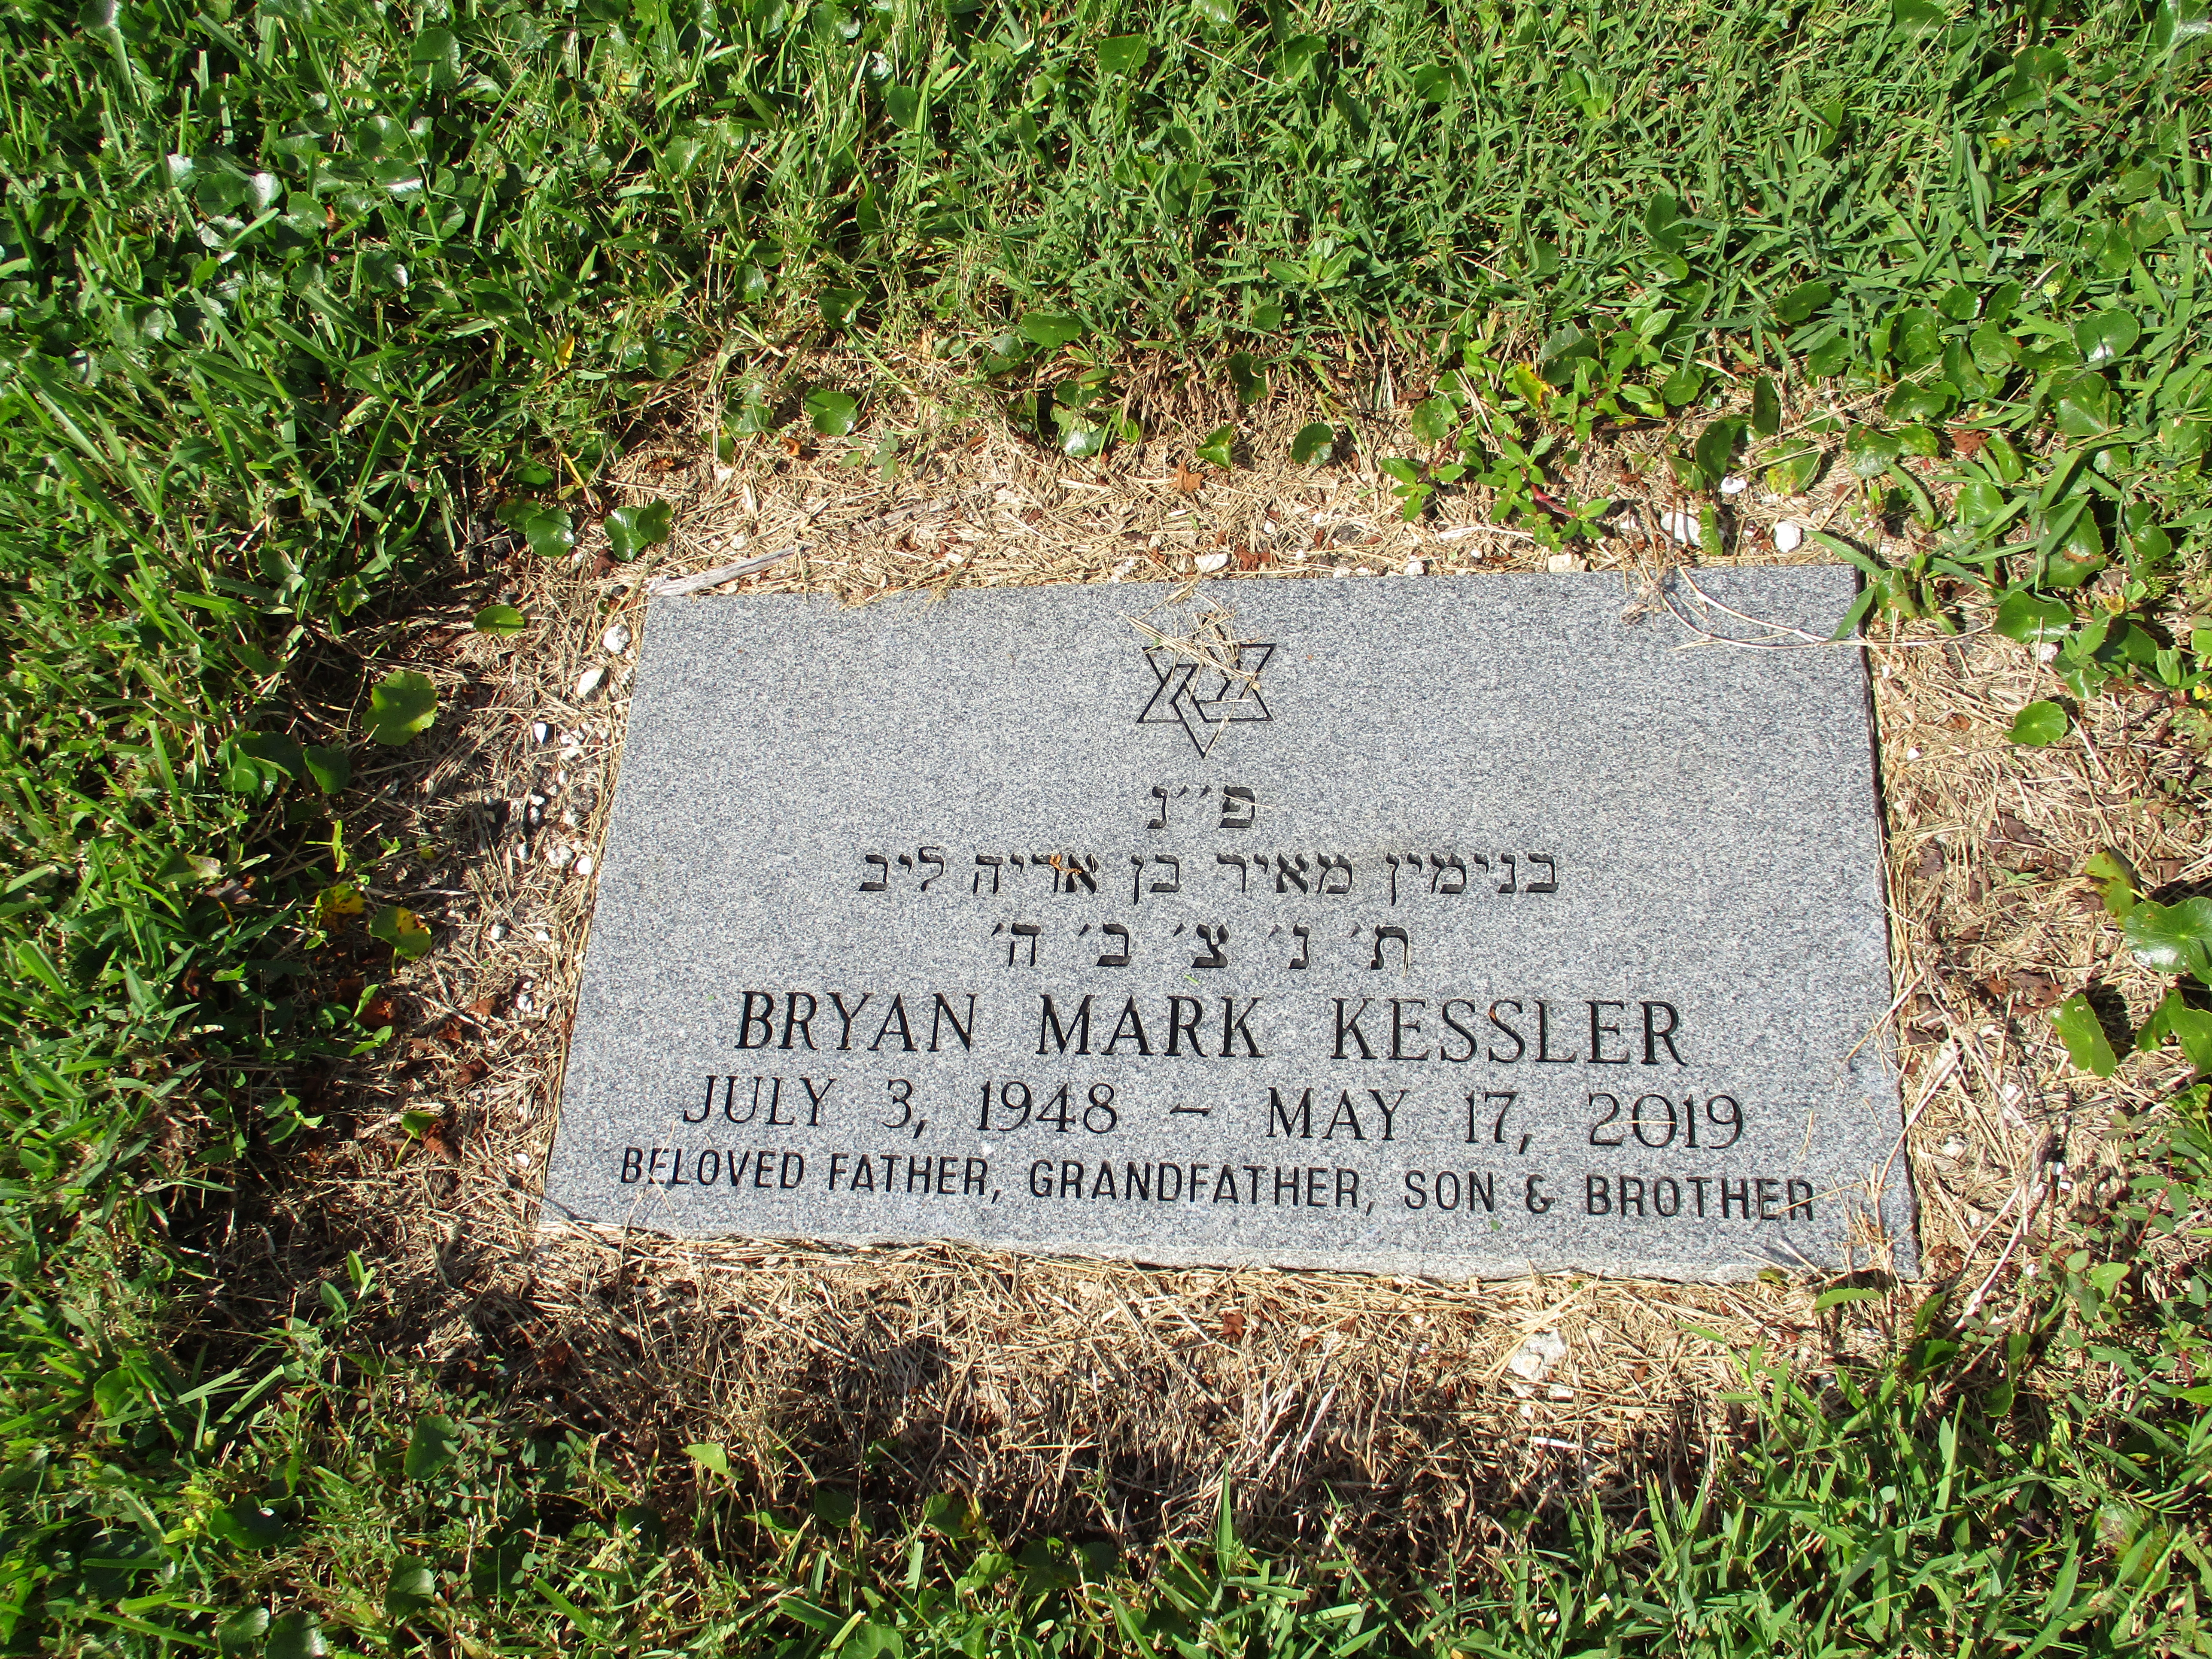 Bryan Mark Kessler